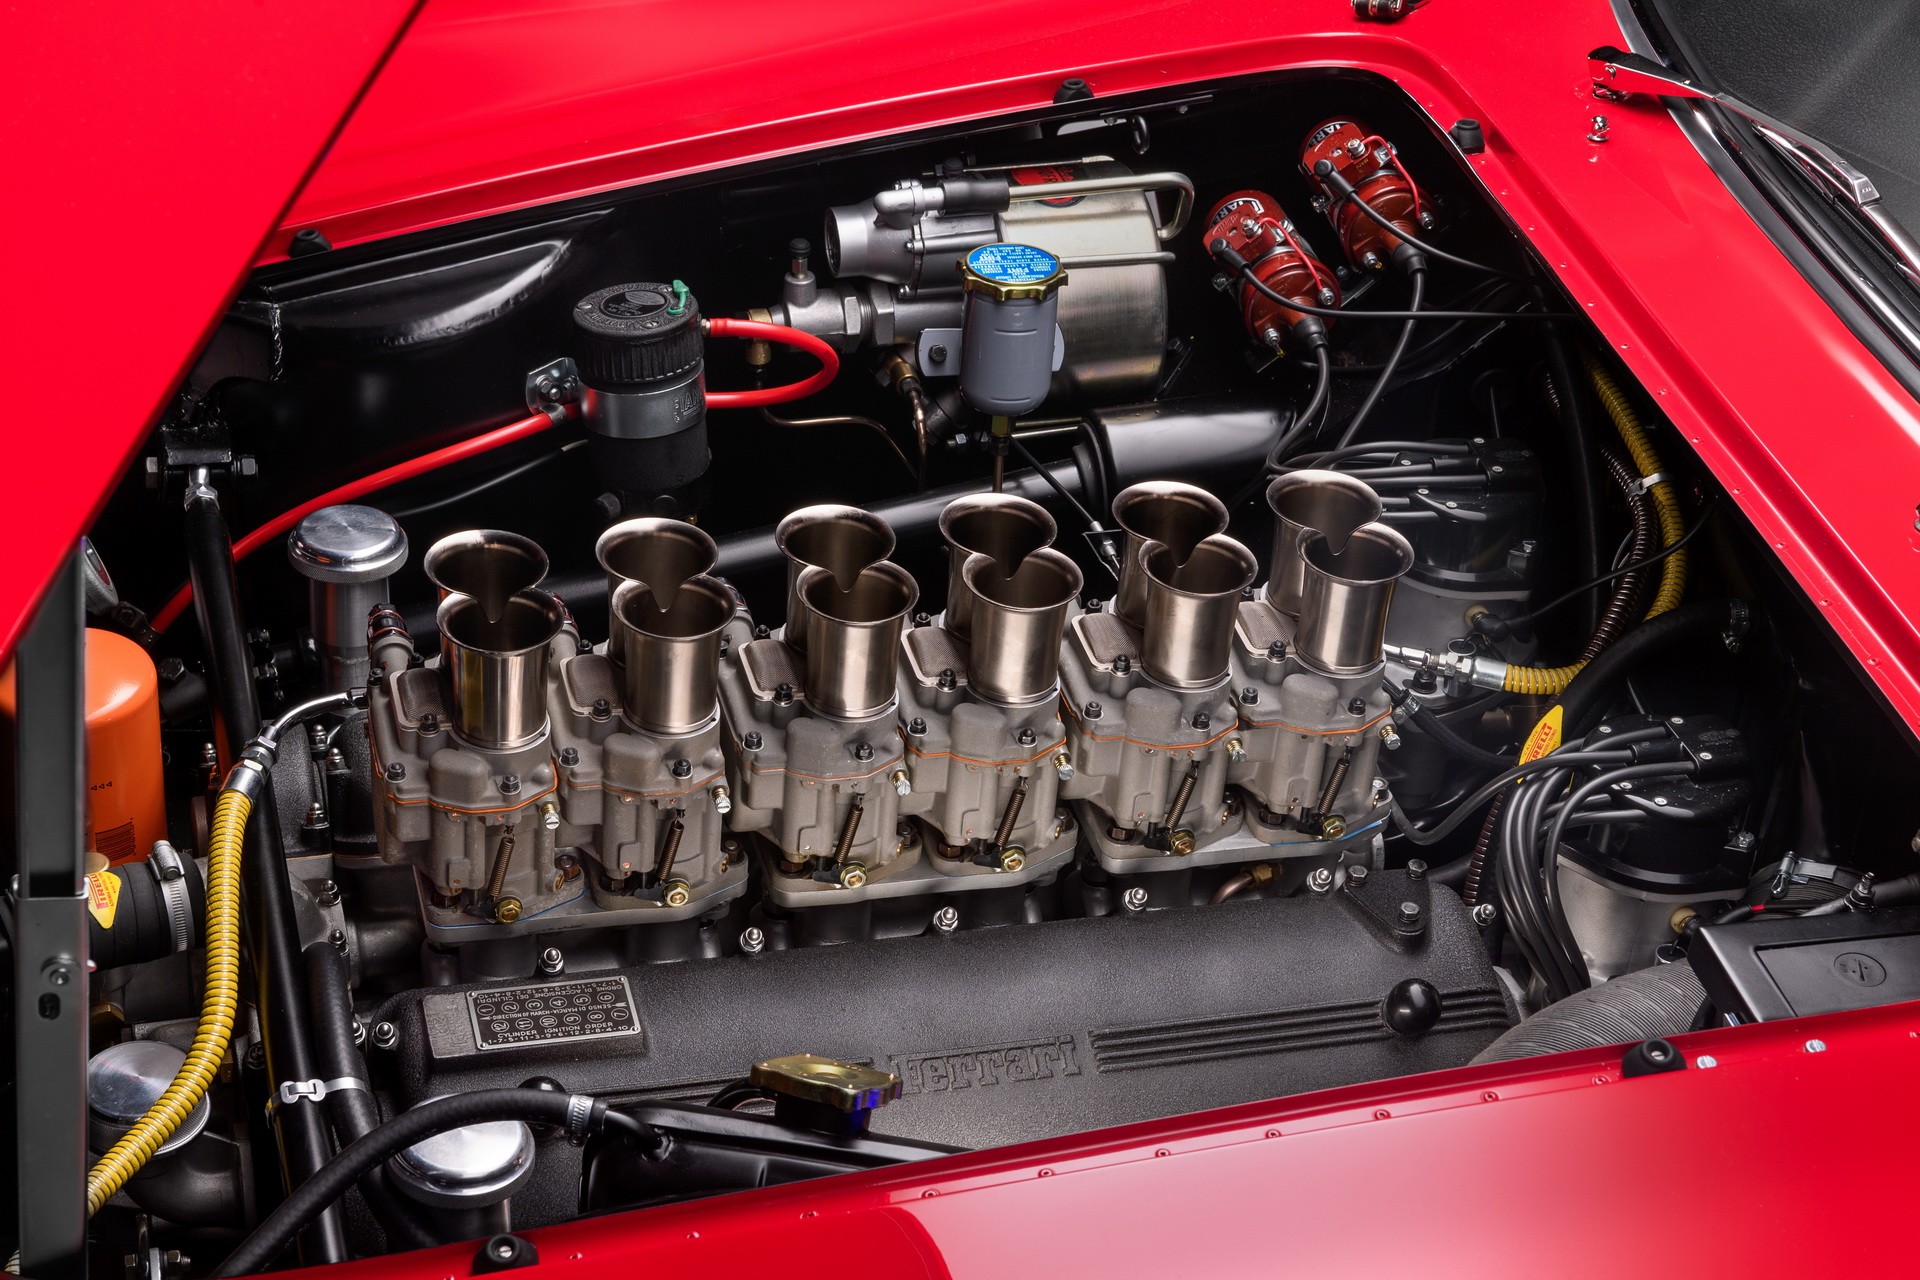 Впечатляющая реплика купе Ferrari 330 LMB